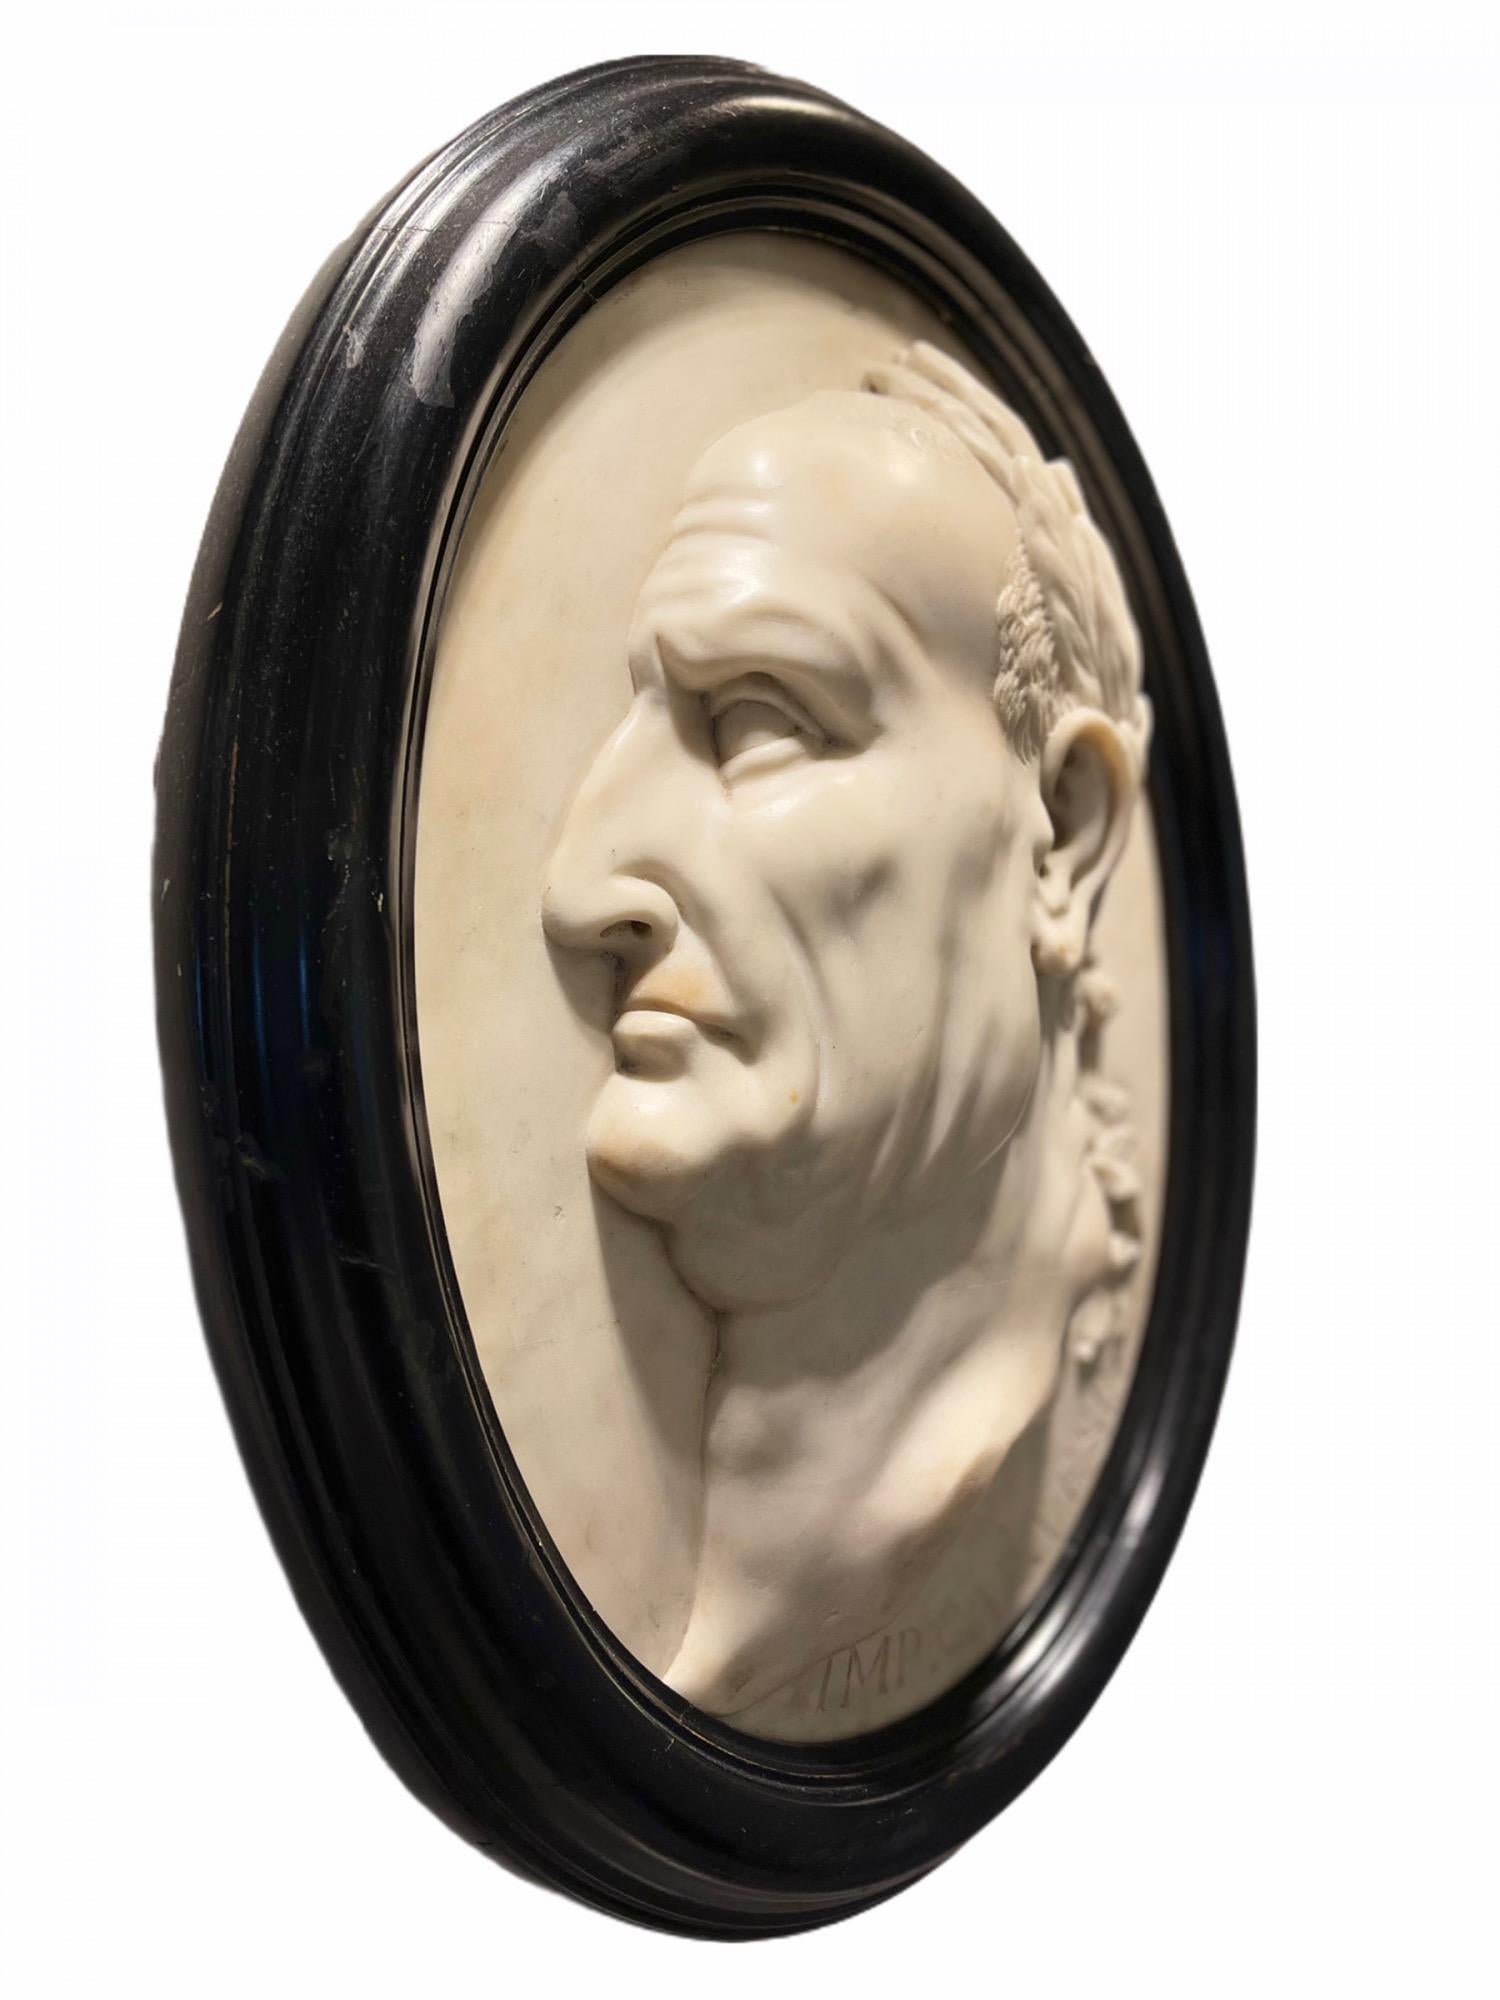 Dieses fein modellierte Porträtrelief des römischen Kaisers Caesar Vespasian (9-79 n. Chr.) aus dem späten 18. Jahrhundert (Grand Tour Periode) ist aus Carrara-Marmor geschnitzt. Vespasian gründete die flavische Dynastie, die das Römische Reich 27